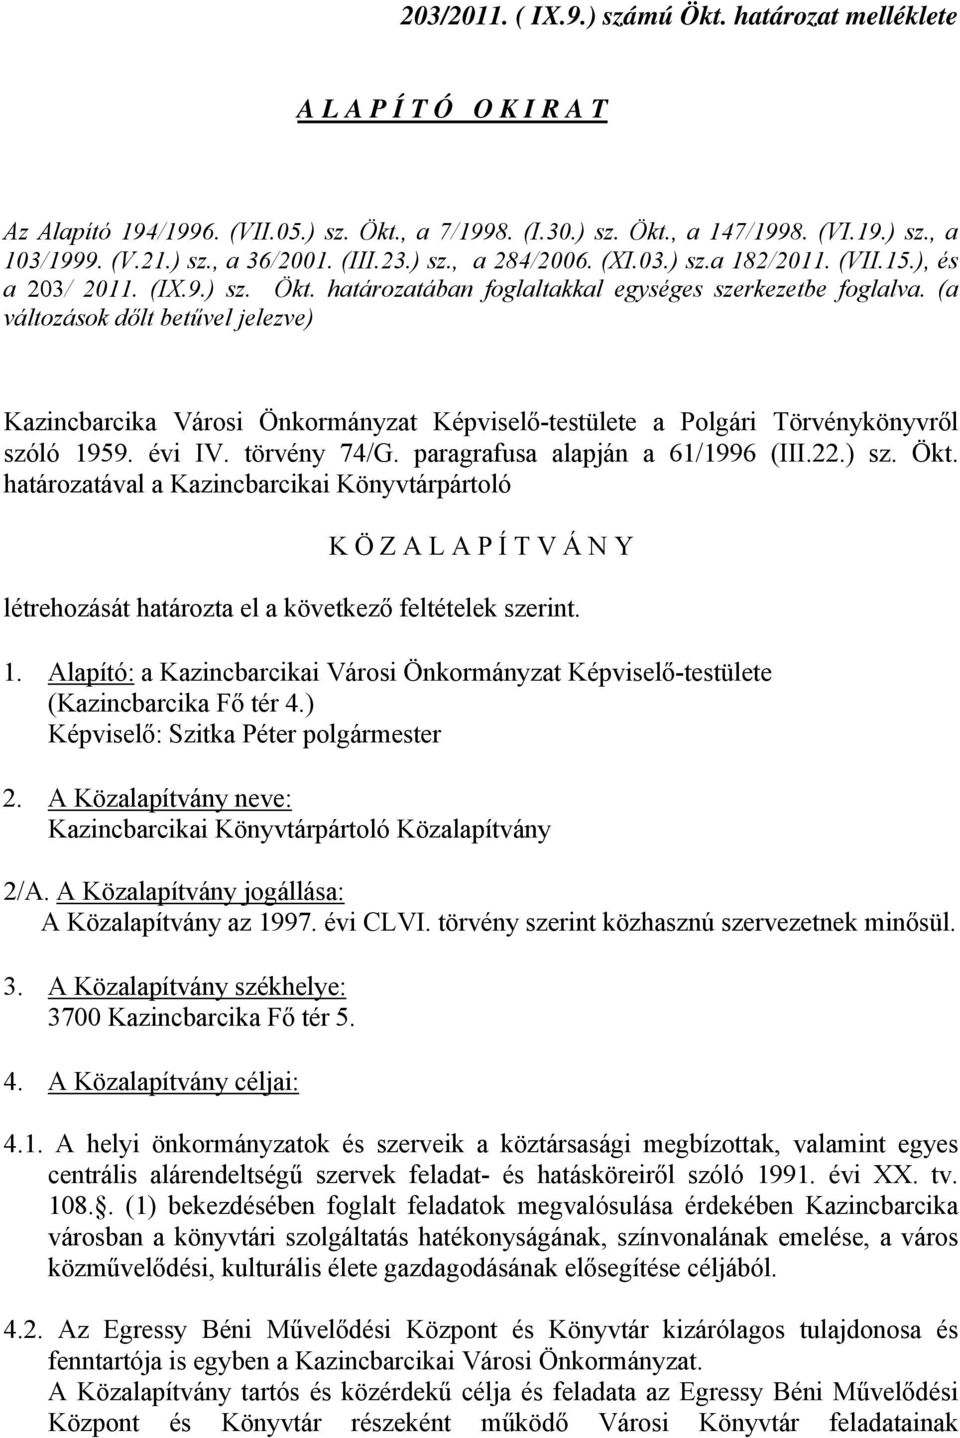 (a változások dőlt betűvel jelezve) Kazincbarcika Városi Önkormányzat Képviselő-testülete a Polgári Törvénykönyvről szóló 1959. évi IV. törvény 74/G. paragrafusa alapján a 61/1996 (III.22.) sz. Ökt.